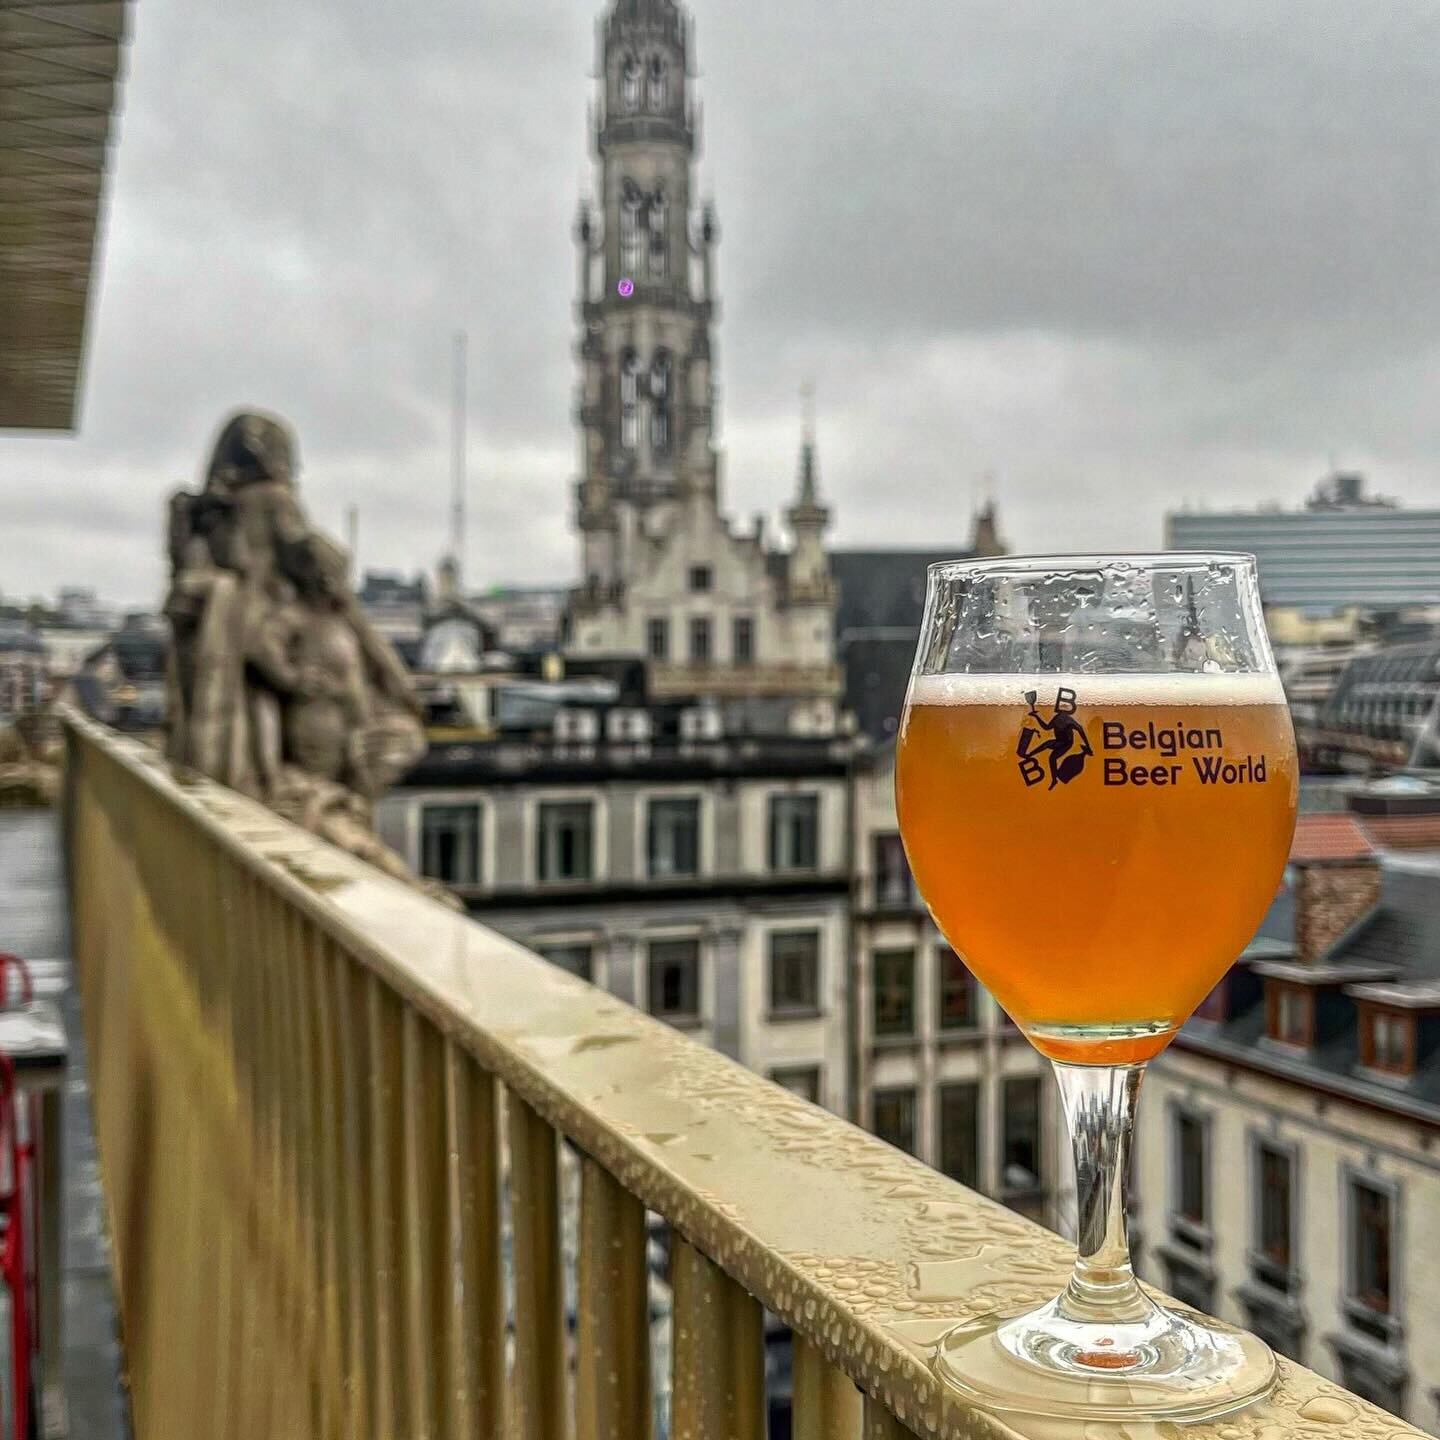 En noviembre, exploramos el @belgian_beer_world, el nuevo museo de la cerveza ubicado en la antigua bolsa de comercio de Bruselas. En el &uacute;ltimo piso, descubrimos un bar con m&aacute;s de 80 cervezas diferentes y disfrutamos de una vista &uacut